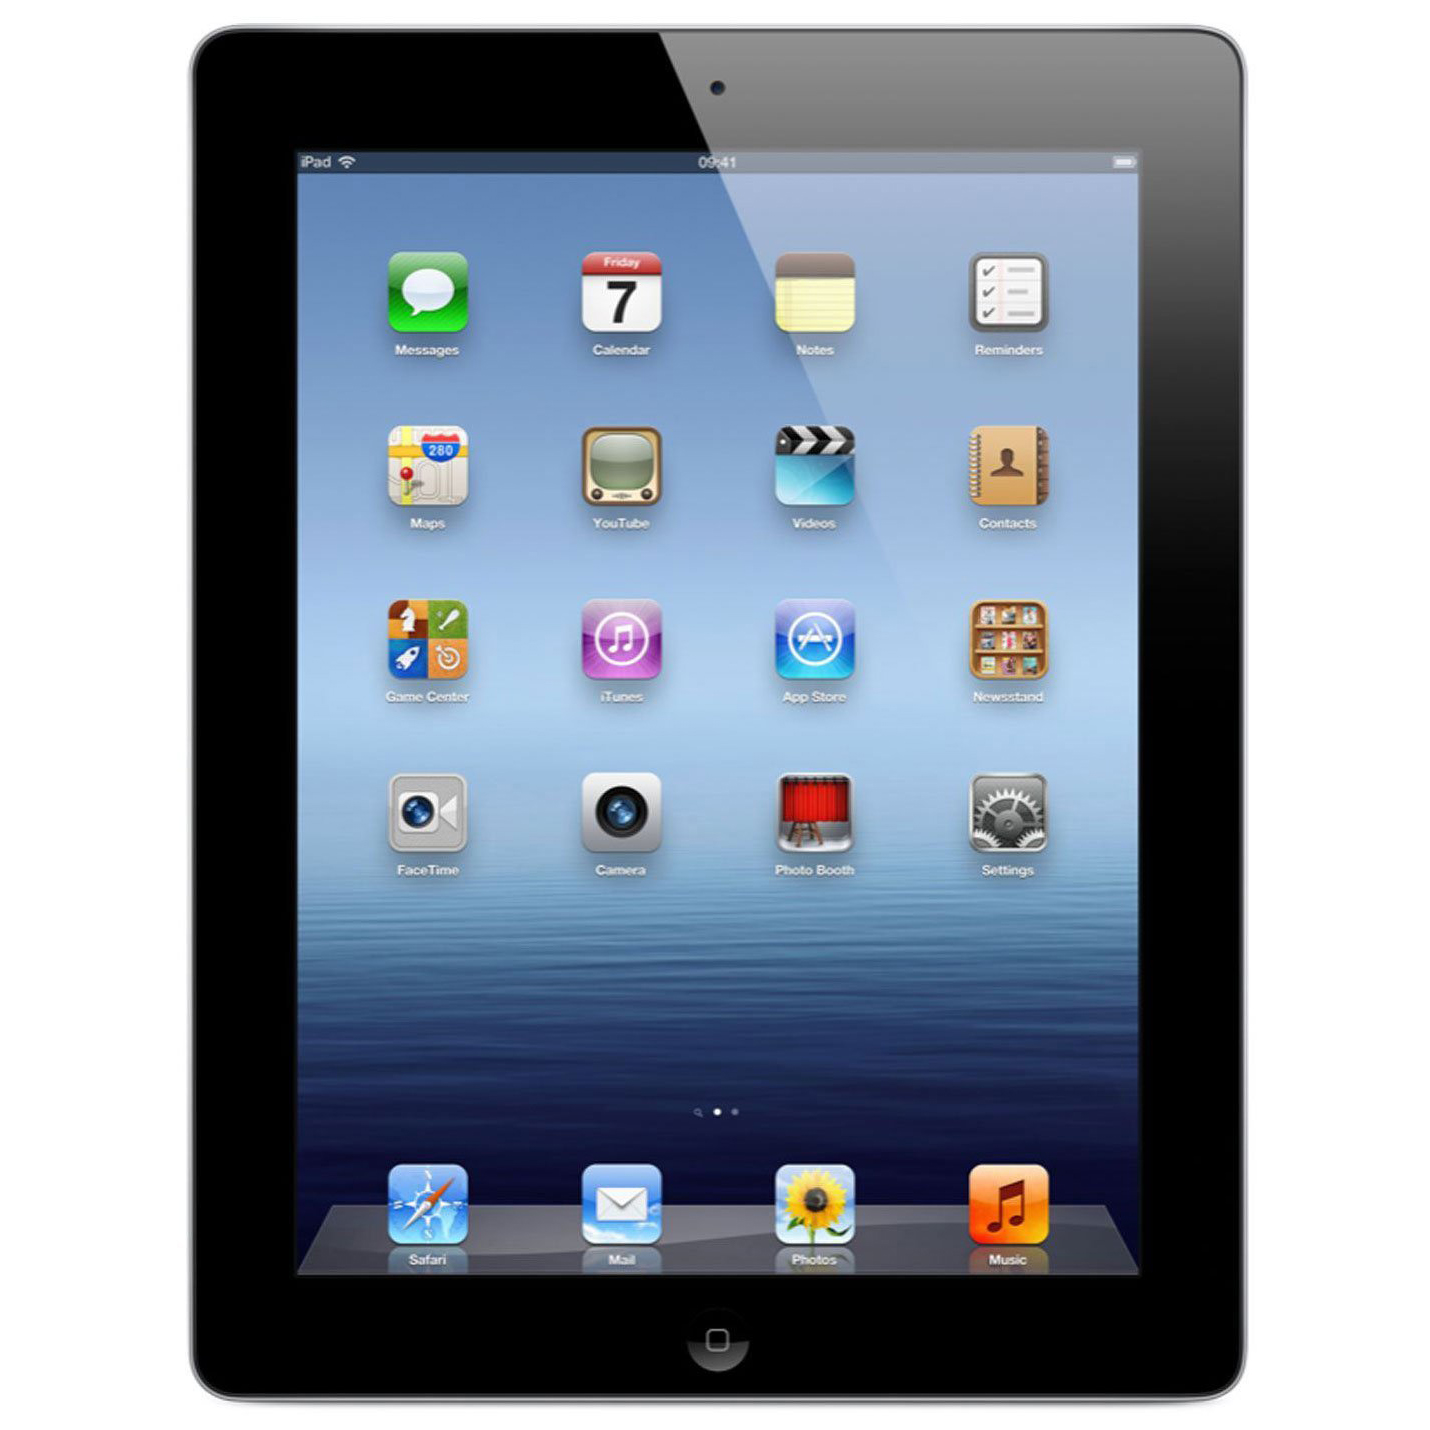 Restored Apple iPad 3 9.7" 16GB WiFi Tablet Dual Core A5X Processor 1GB RAM Black (Refurbished) - image 1 of 3